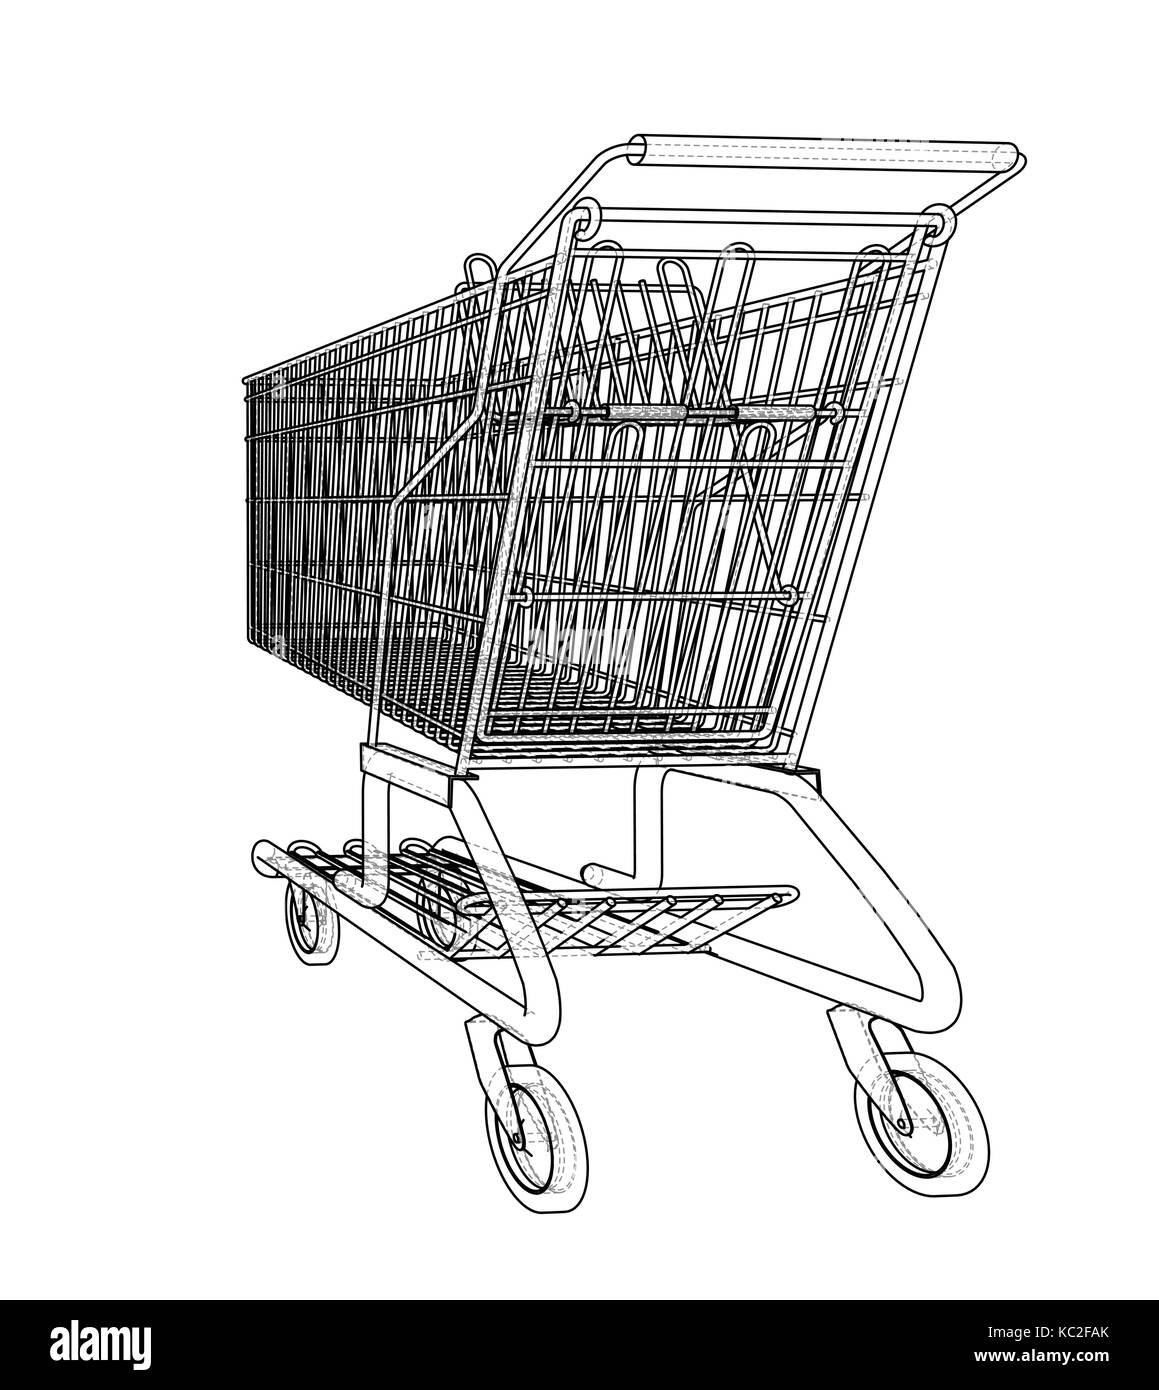 Einkaufswagen zeichnung Stock-Vektorgrafiken kaufen - Alamy